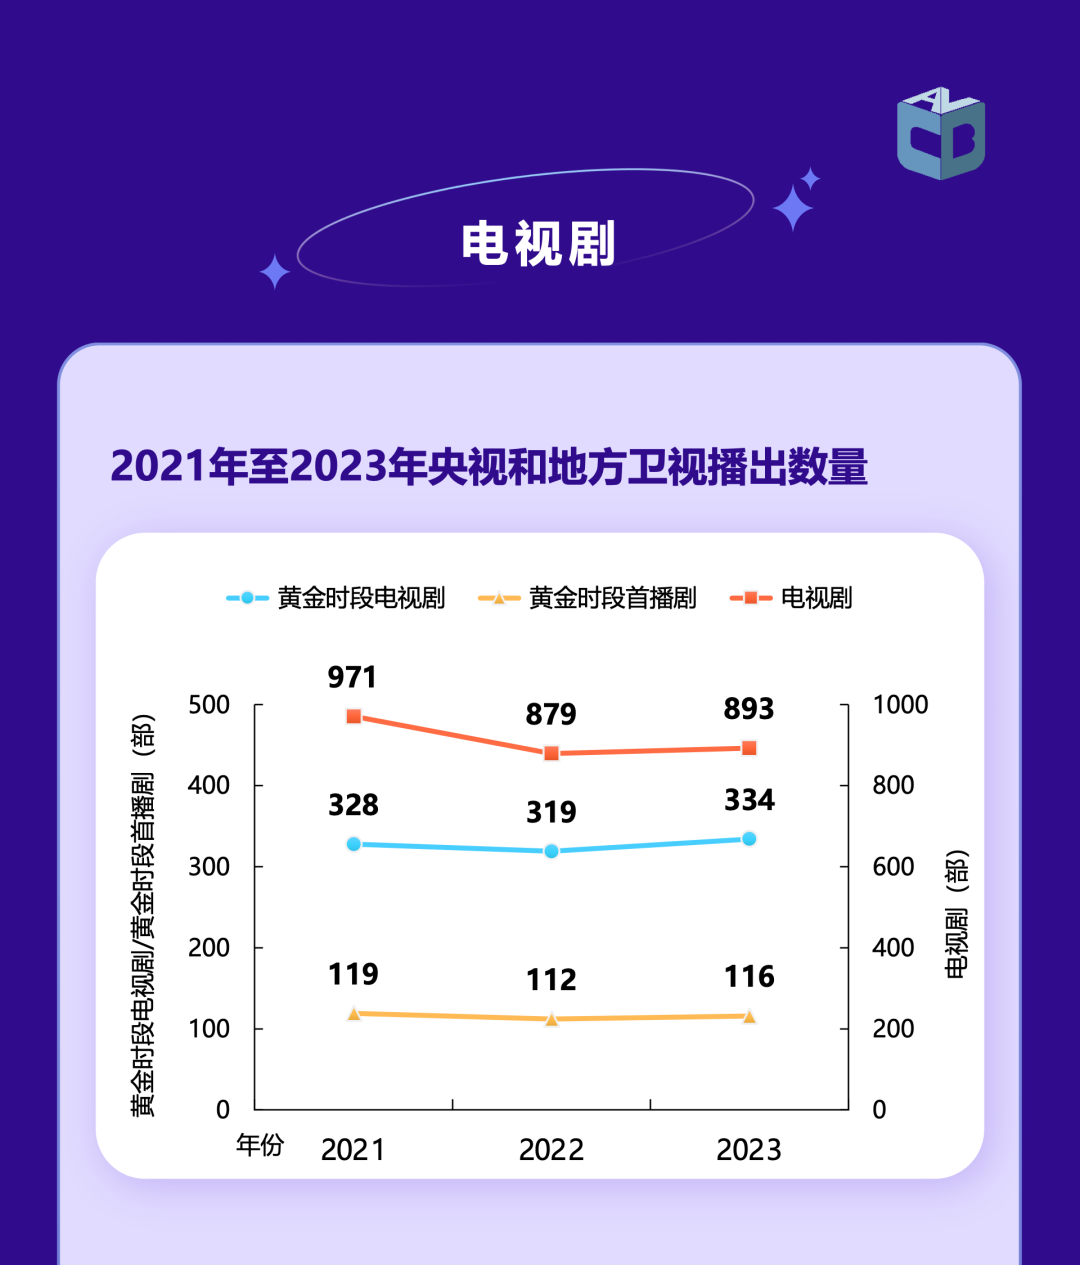 中国视听大数据|2023年收视年报